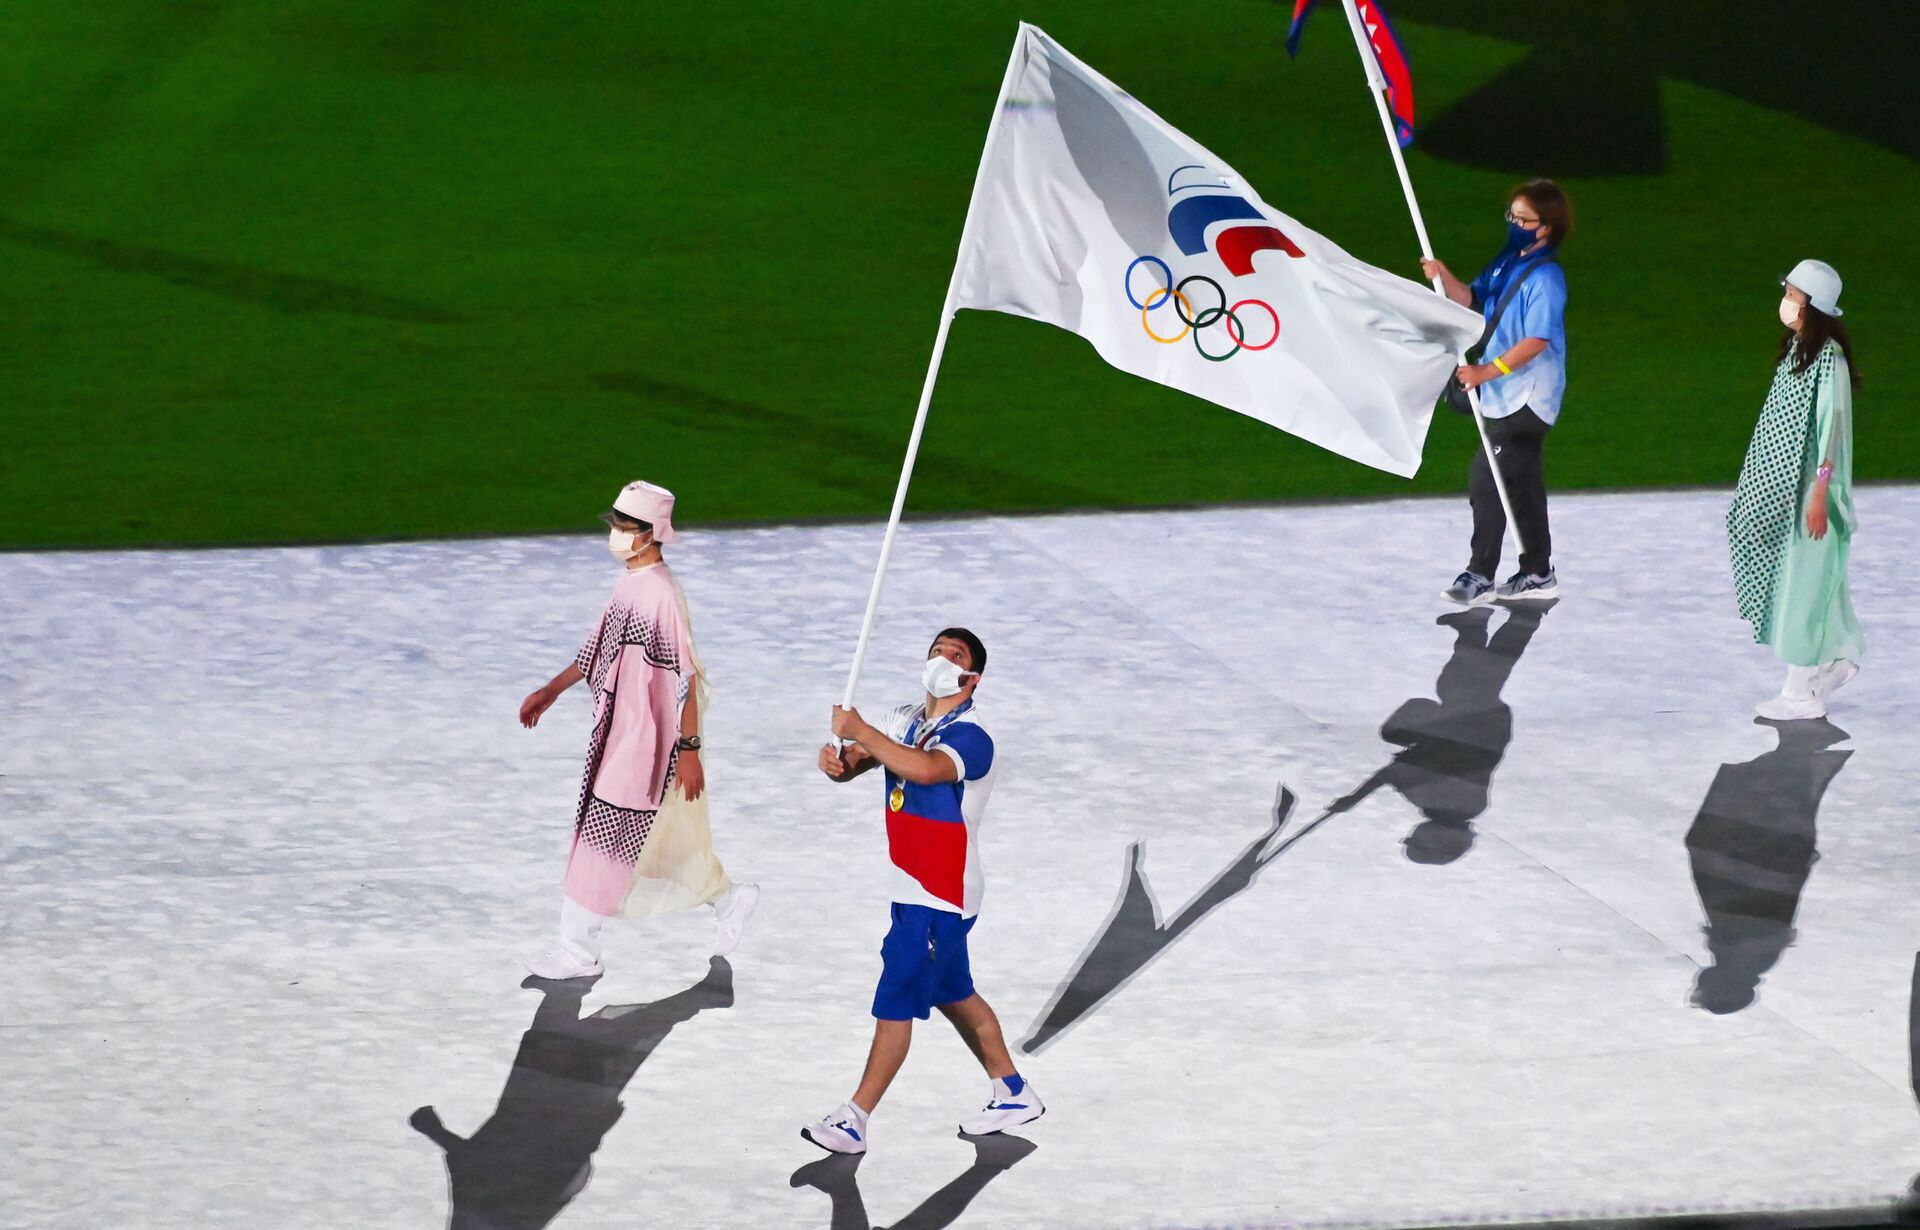 Người mang lá cờ đội Ủy ban Olympic Nga (ROC), đô vật Abdulrashid Sadulayev trong lễ diễu hành của các vận động viên tại lễ bế mạc Thế vận hội Olympic mùa hè lần thứ XXXII ở Tokyo - Sputnik Việt Nam, 1920, 05.10.2021